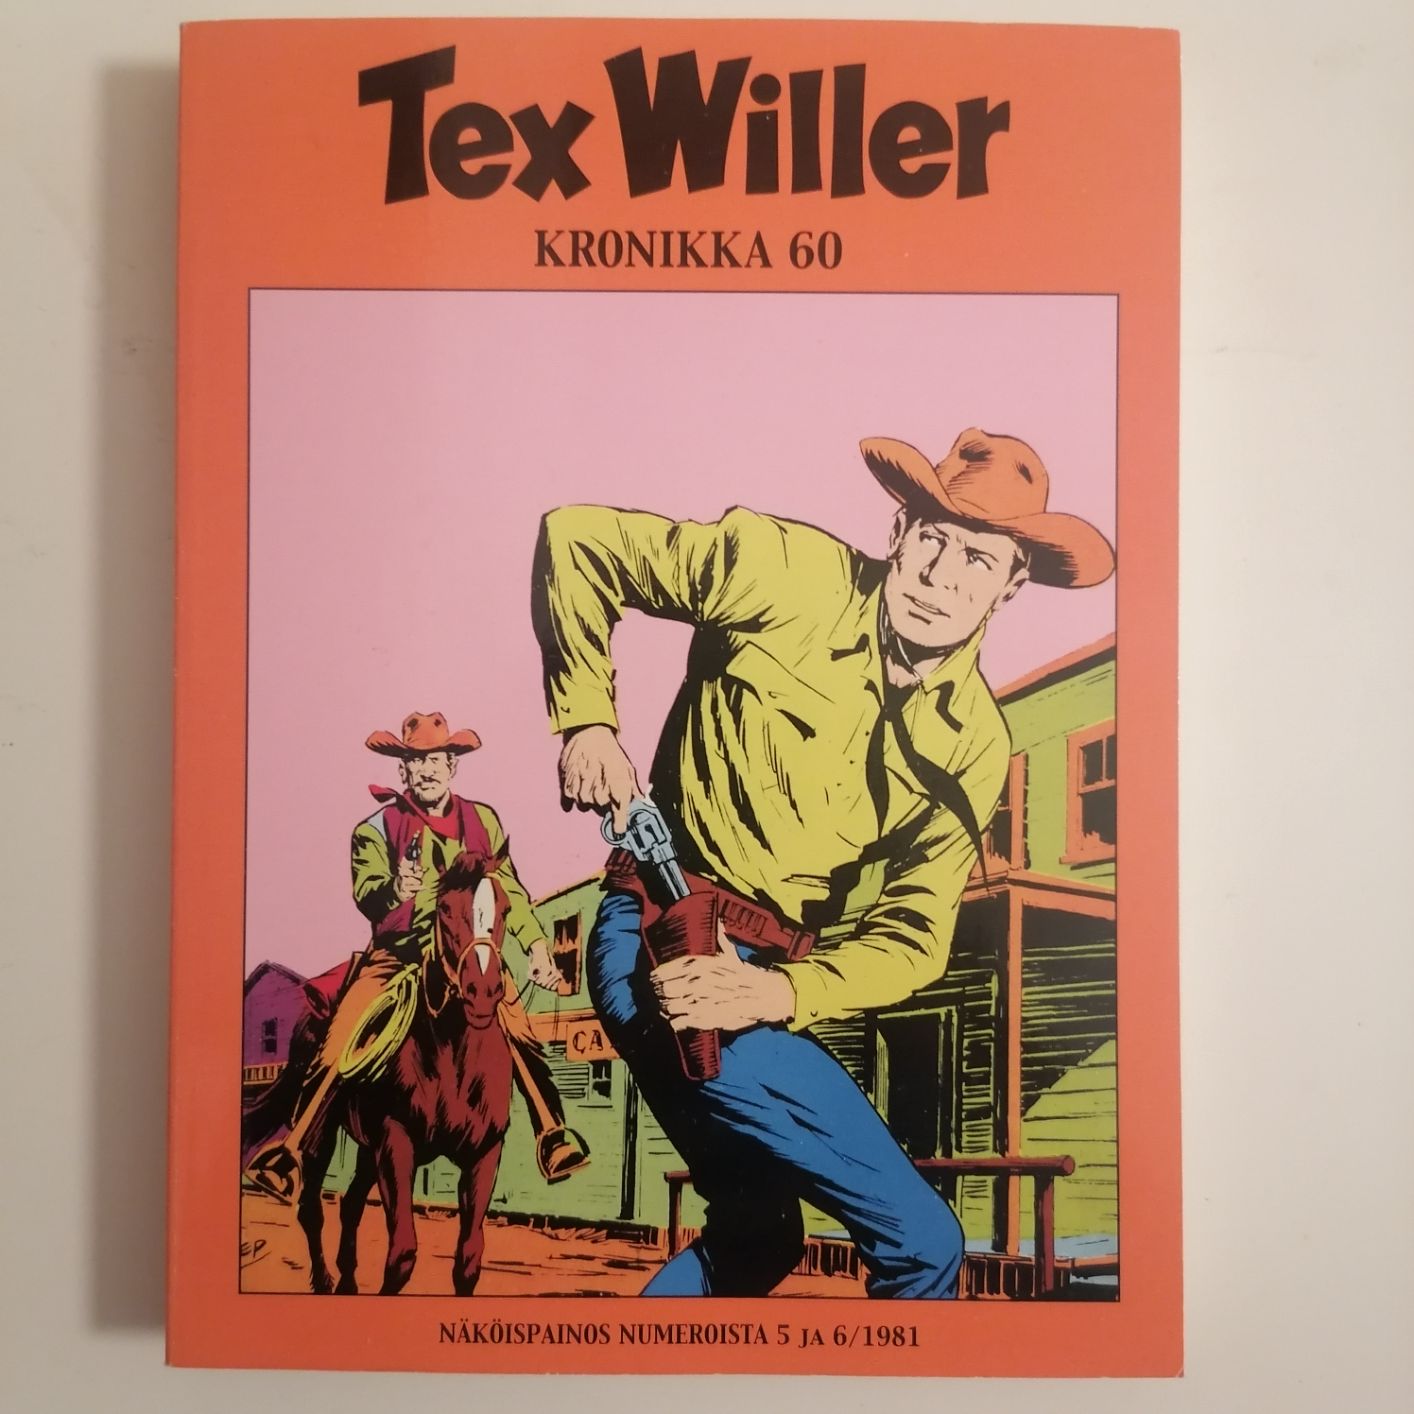 Tex Willer Kronikka 60 näköispainos 5 ja 6 / 1981 siistikuntoinen ja lukematon hinta 5,50euroa.